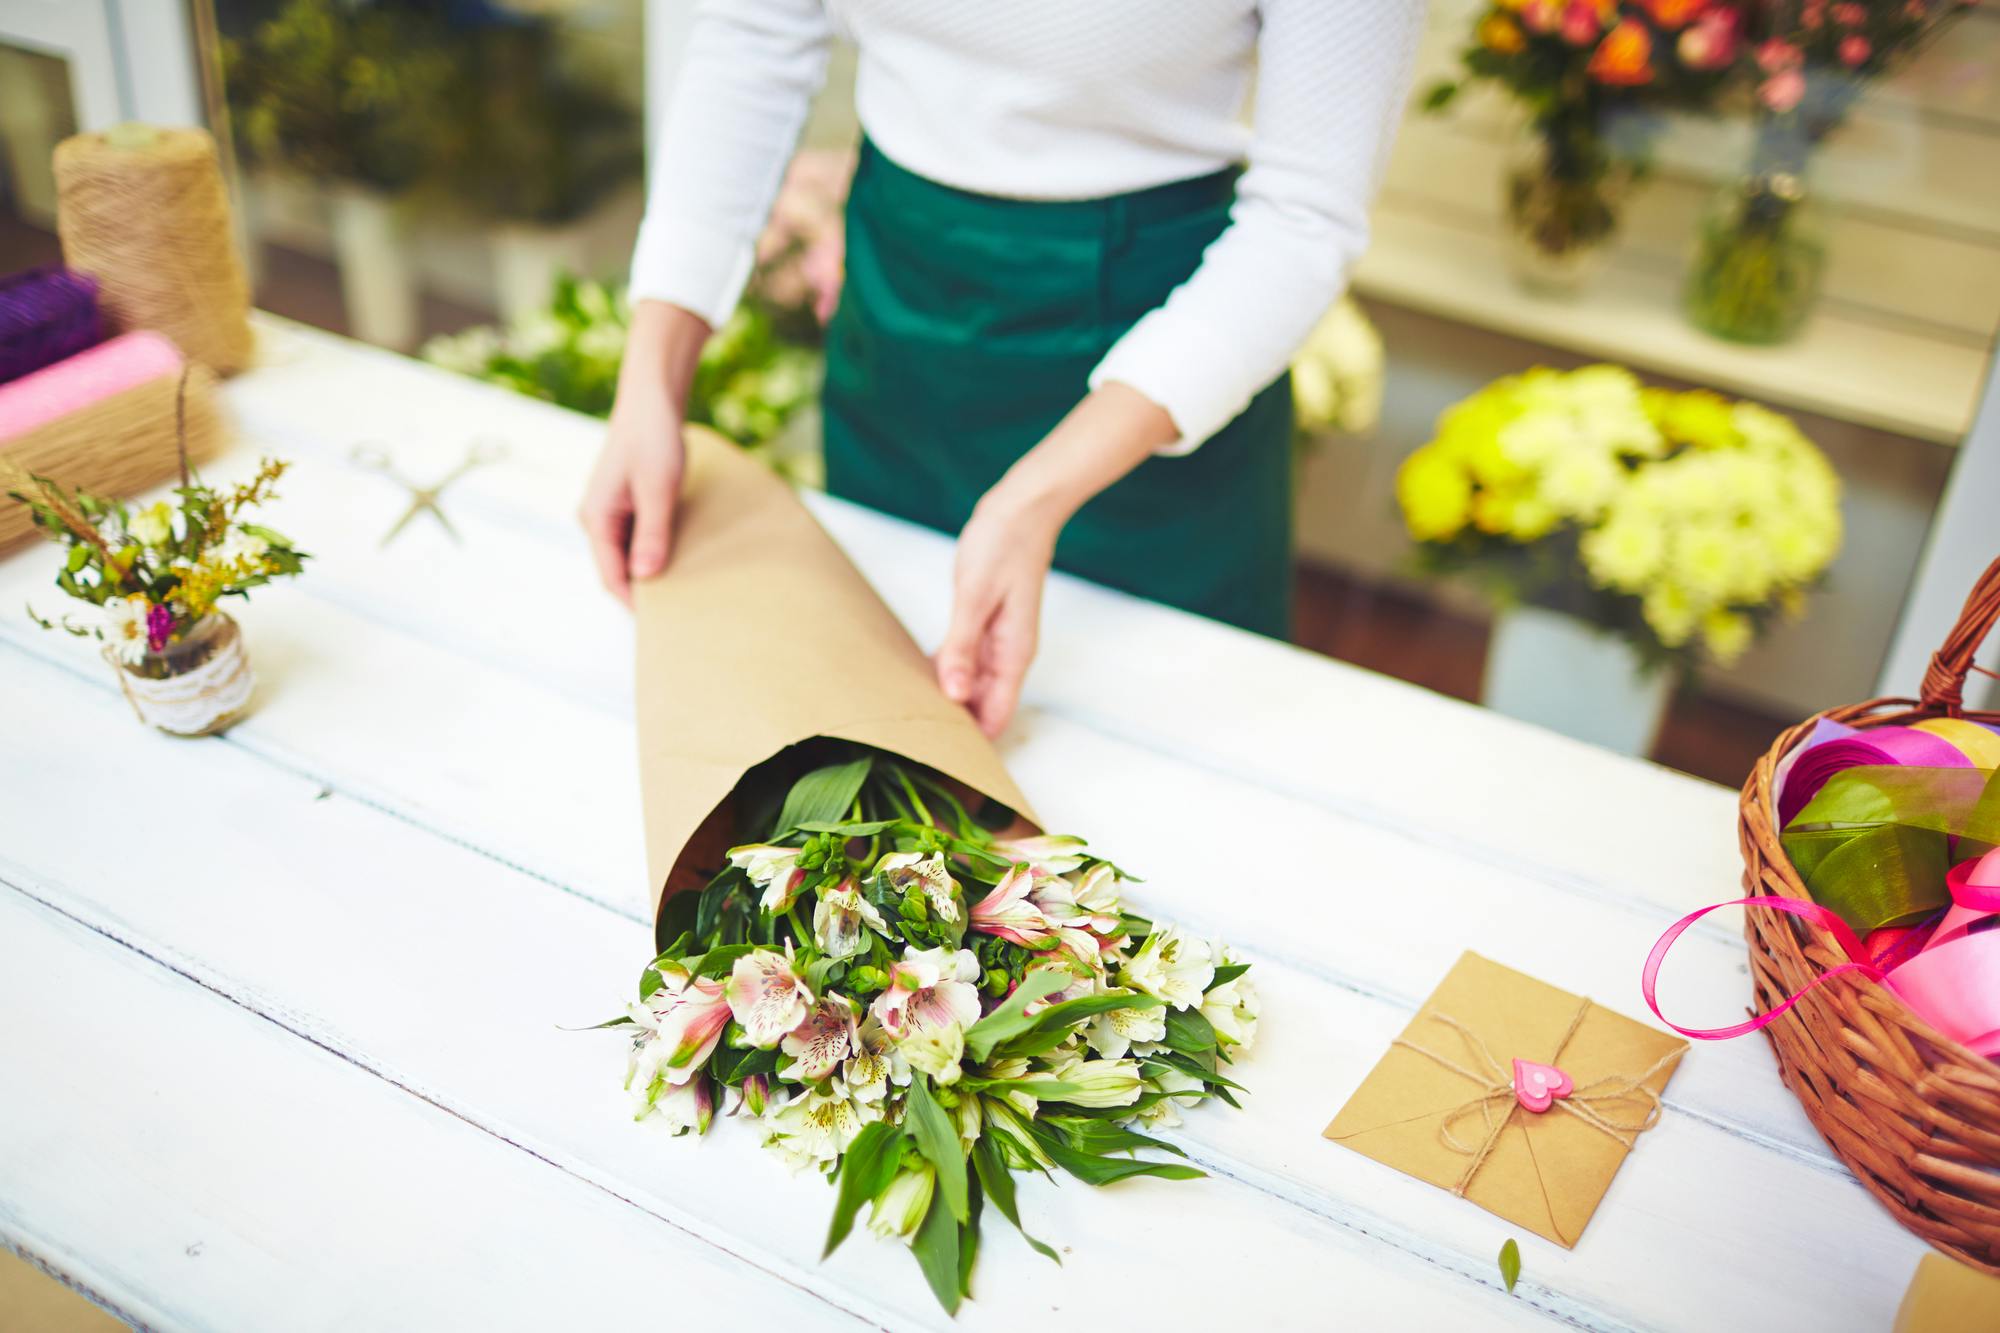 Bloemen online bestellen en aan huis laten leveren in heel België. Top 9 tips voor prachtige bloemen in huis deze zomer afbeelding 4